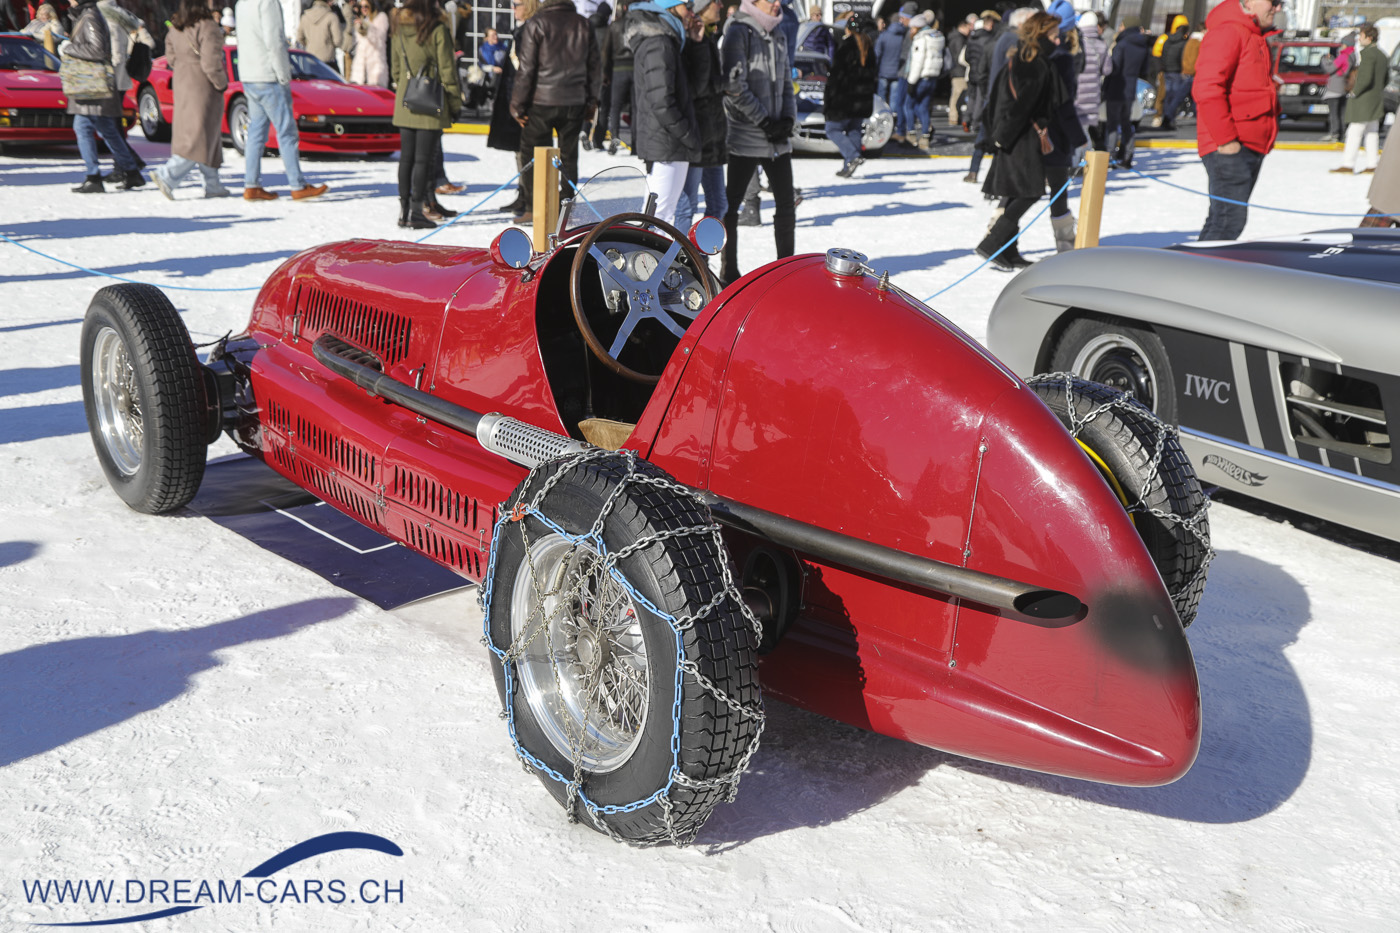 THE ICE, St. Moritz, 26. Februar 2022. Trotz Schneeketten sicher nicht das idealste Auto für den Winter